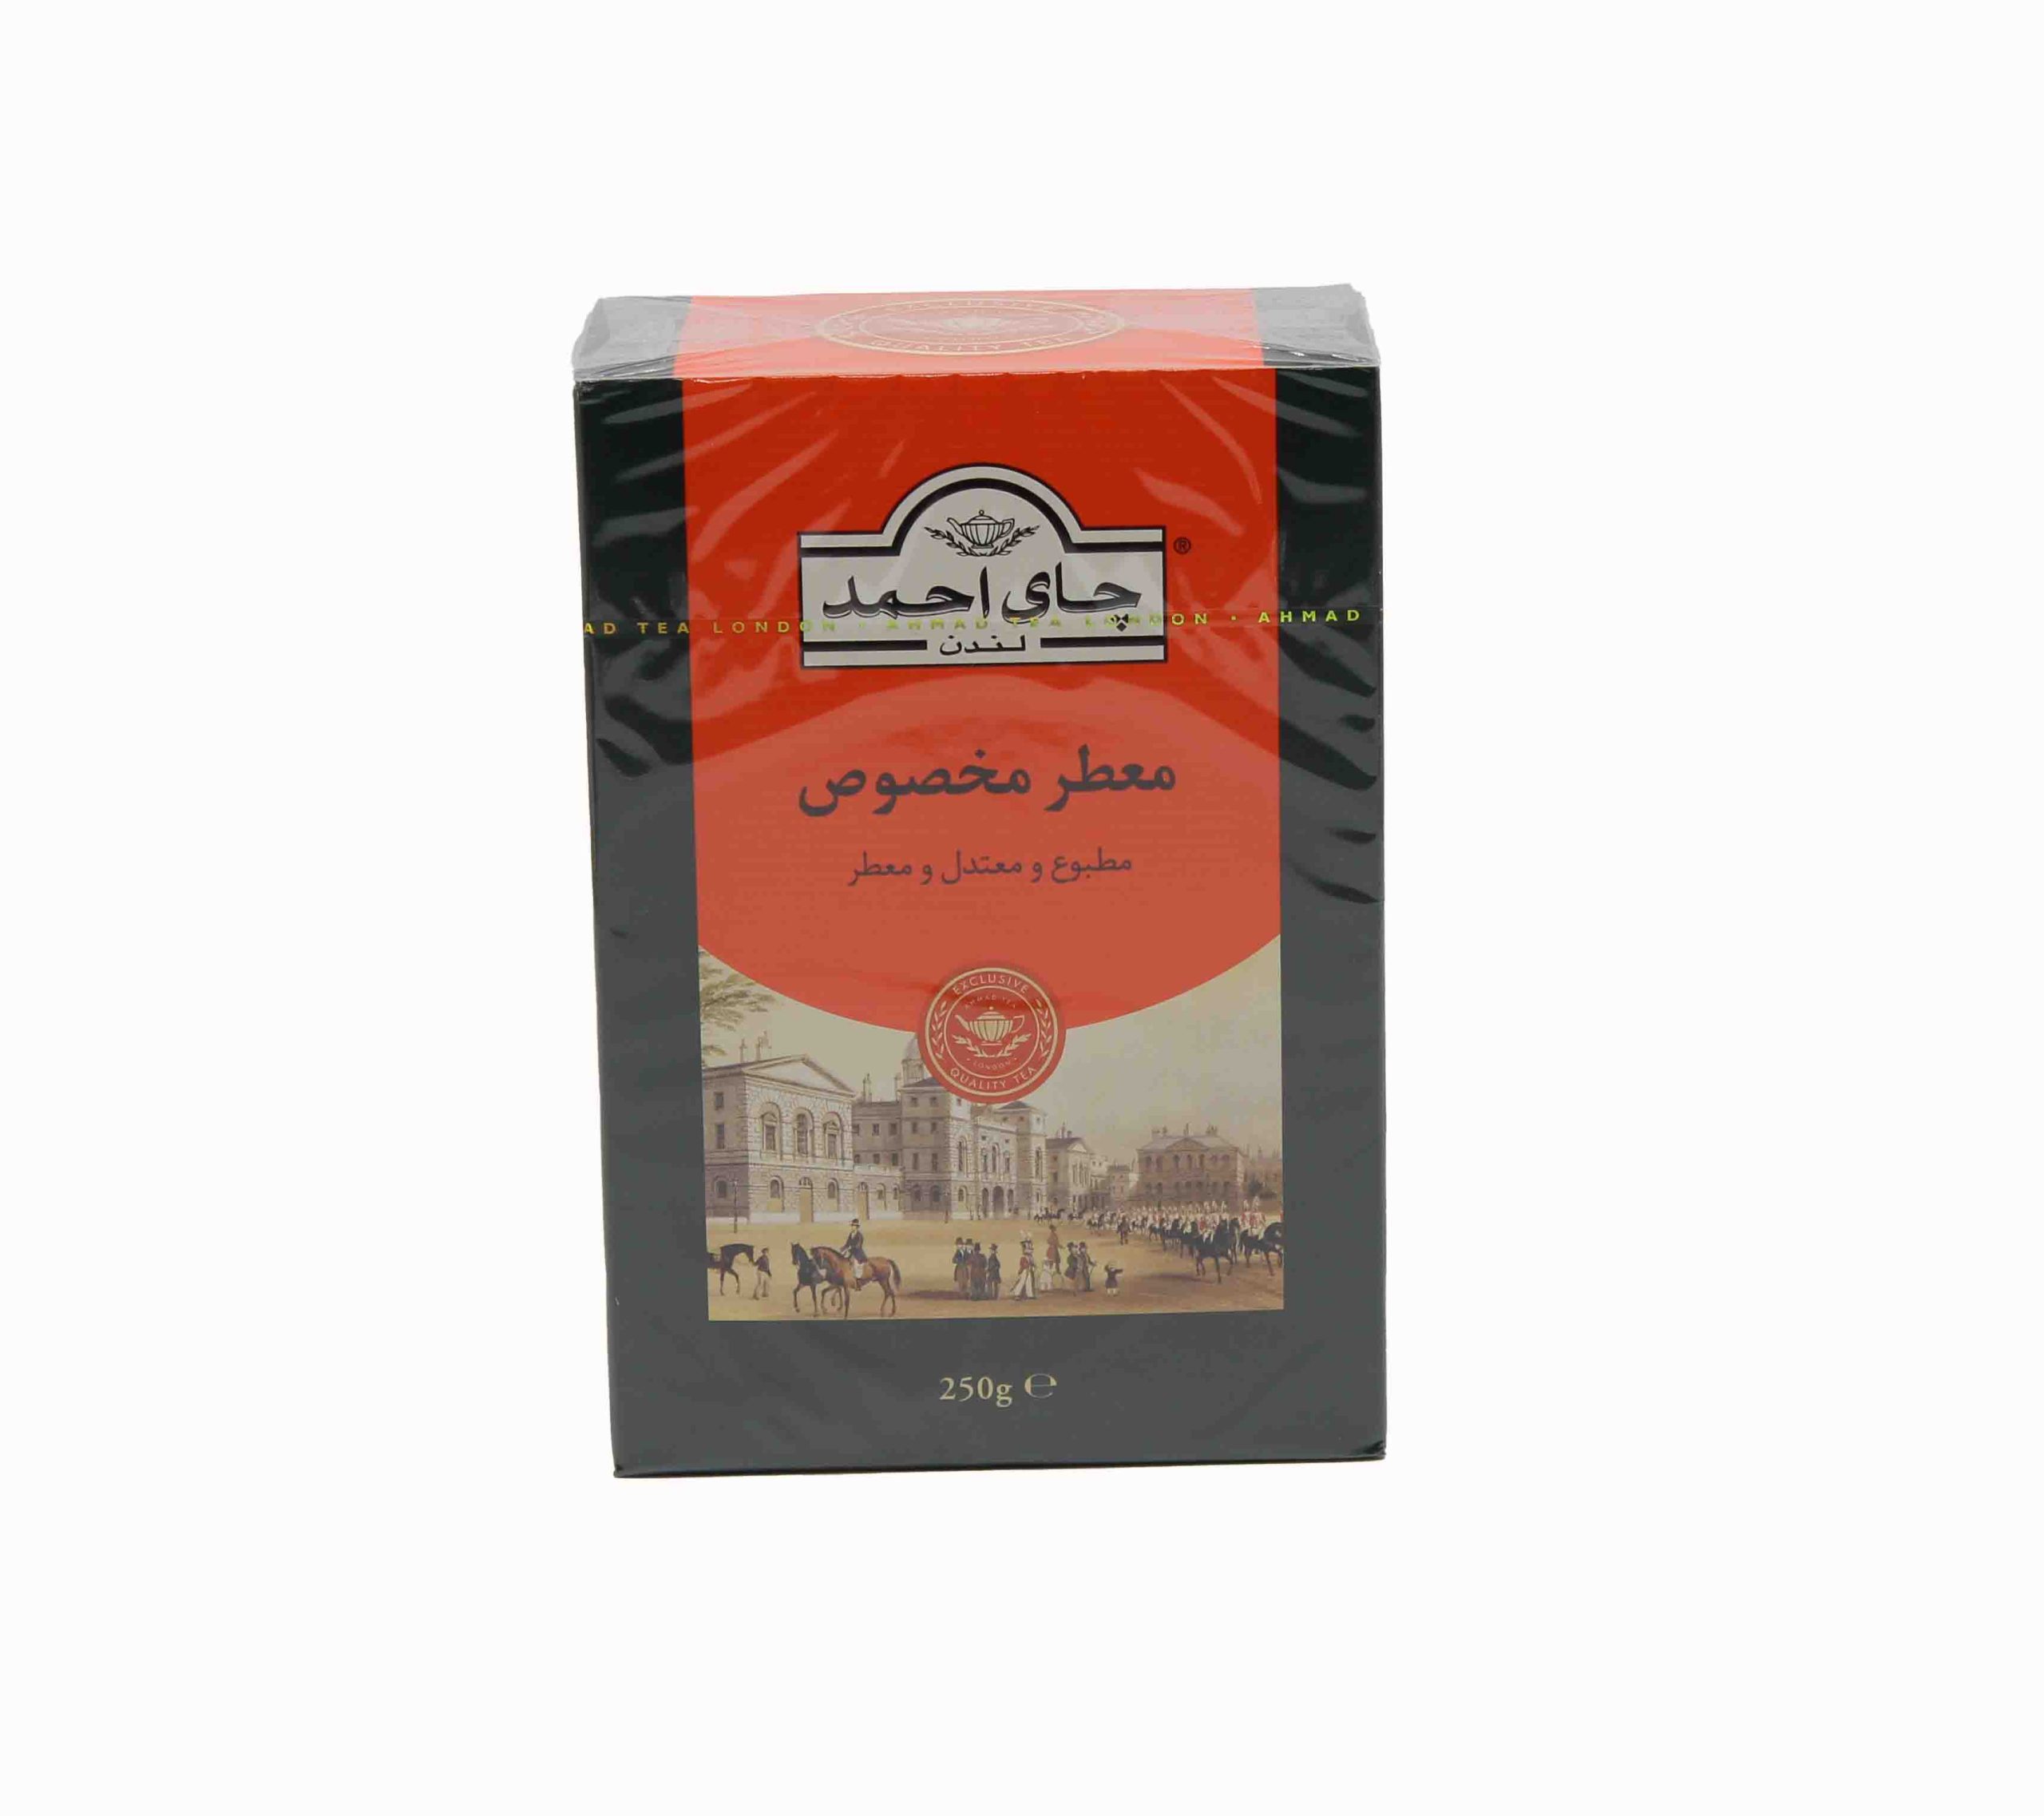 احمد چای معطر مخصوص 250 گرمی